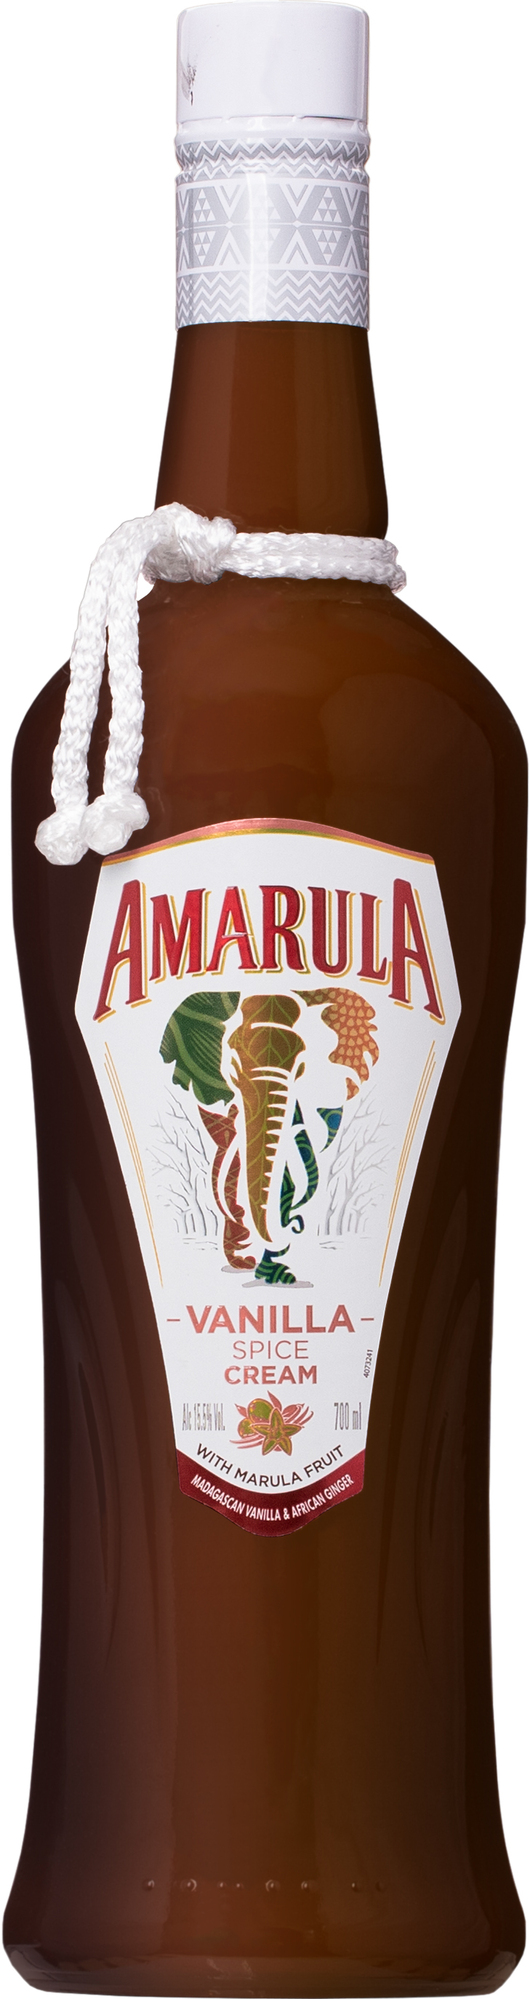 Amarula Cream Fruit Liqueur - Winestore online, 17,50 €